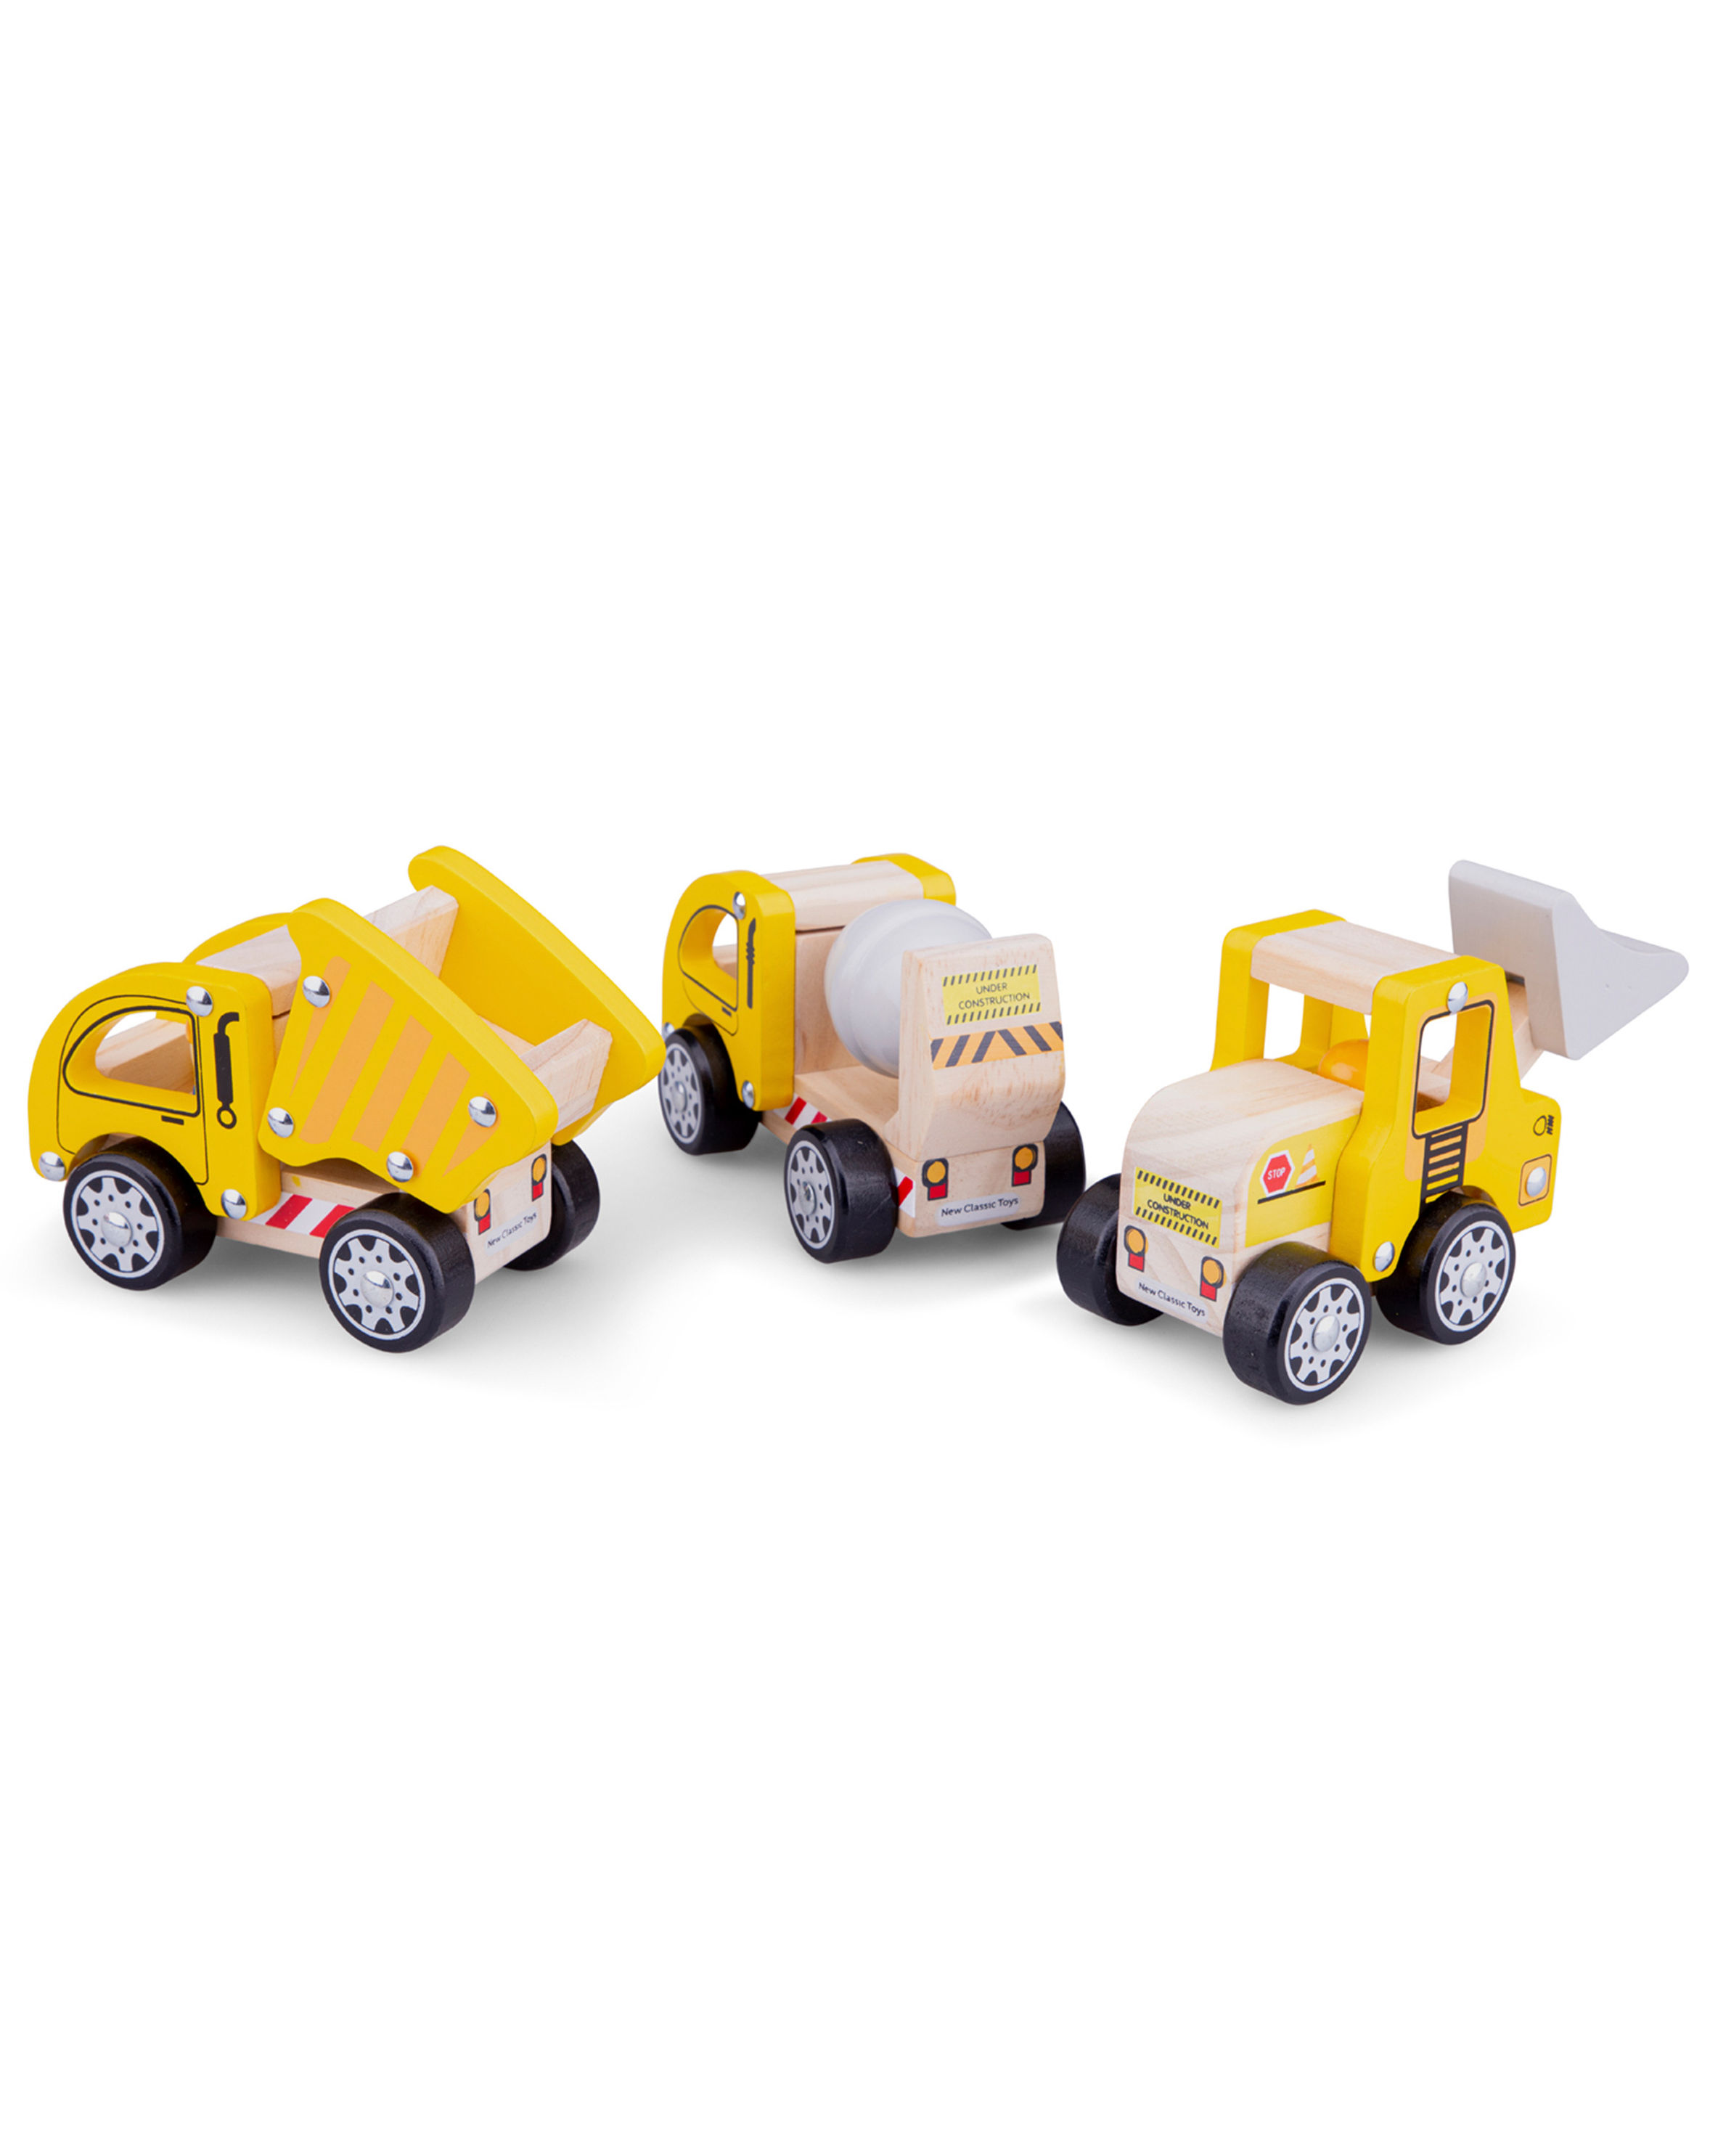 Spielzeugautos BAUFAHRZEUGE 3-teilig aus Holz in gelb | Weltbild.ch